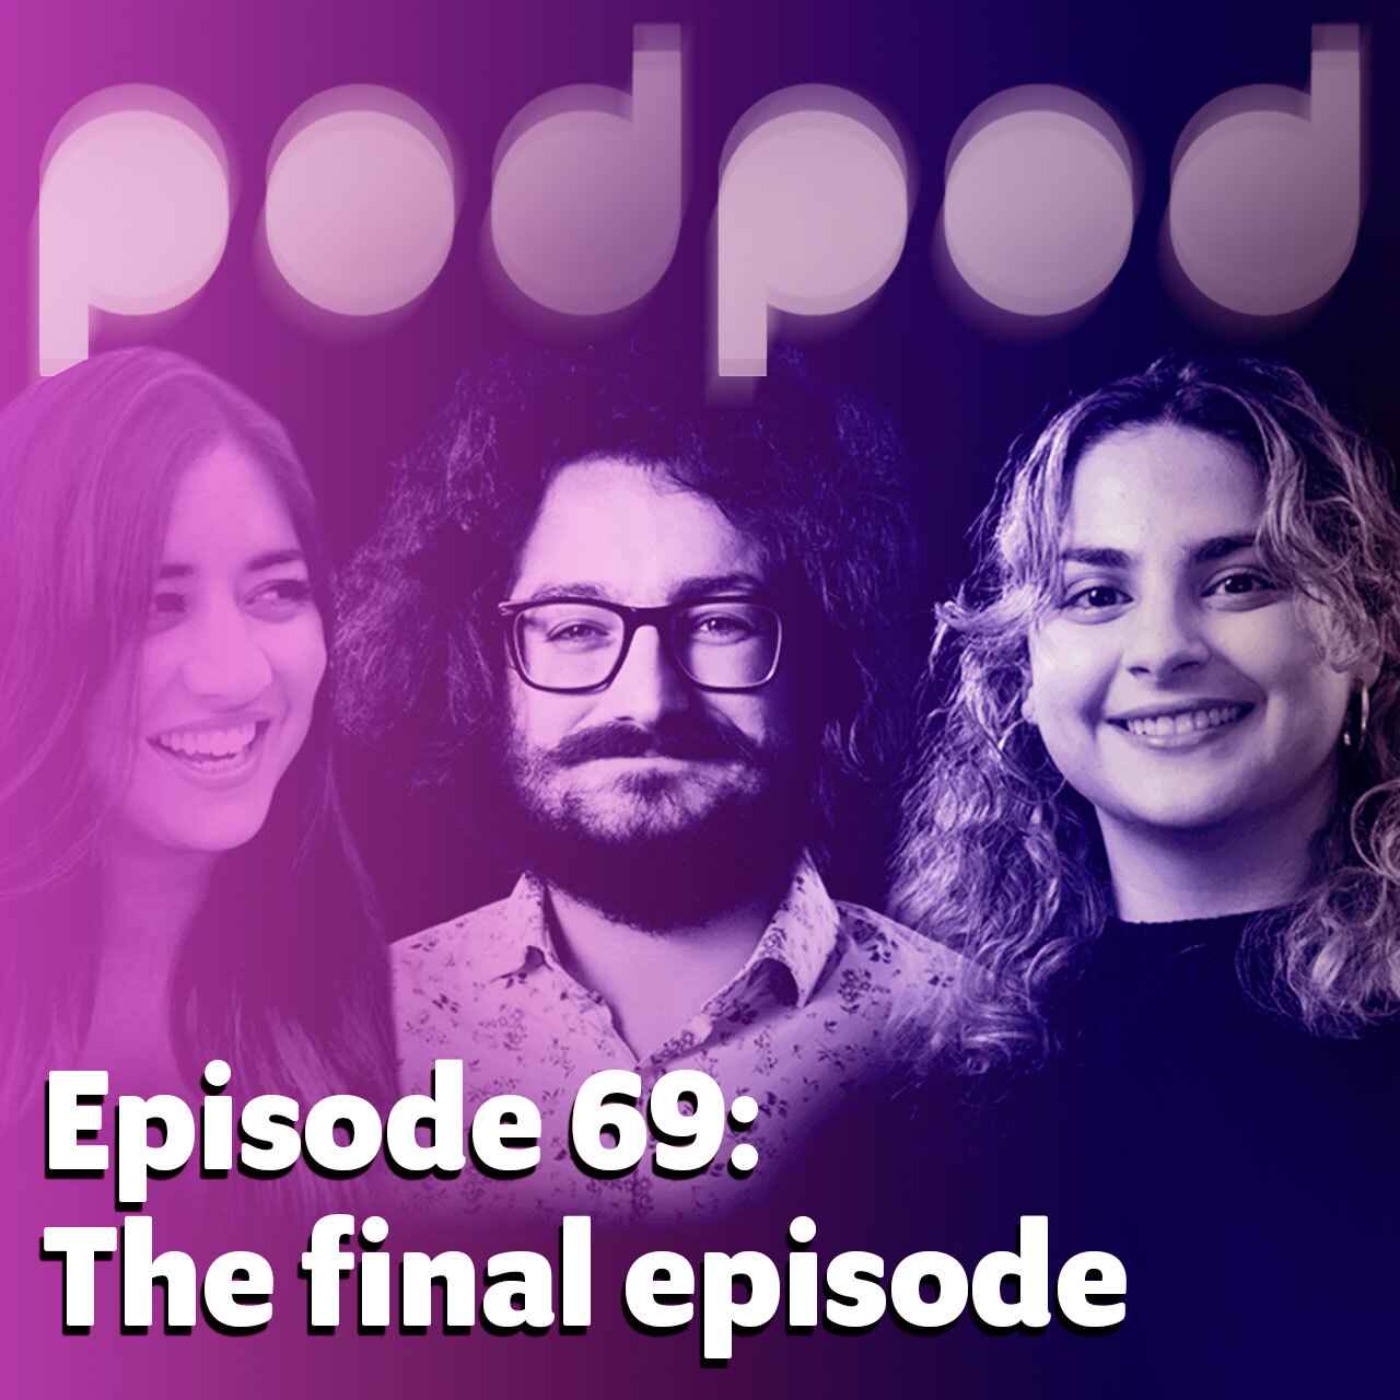 PodPod: The final episode